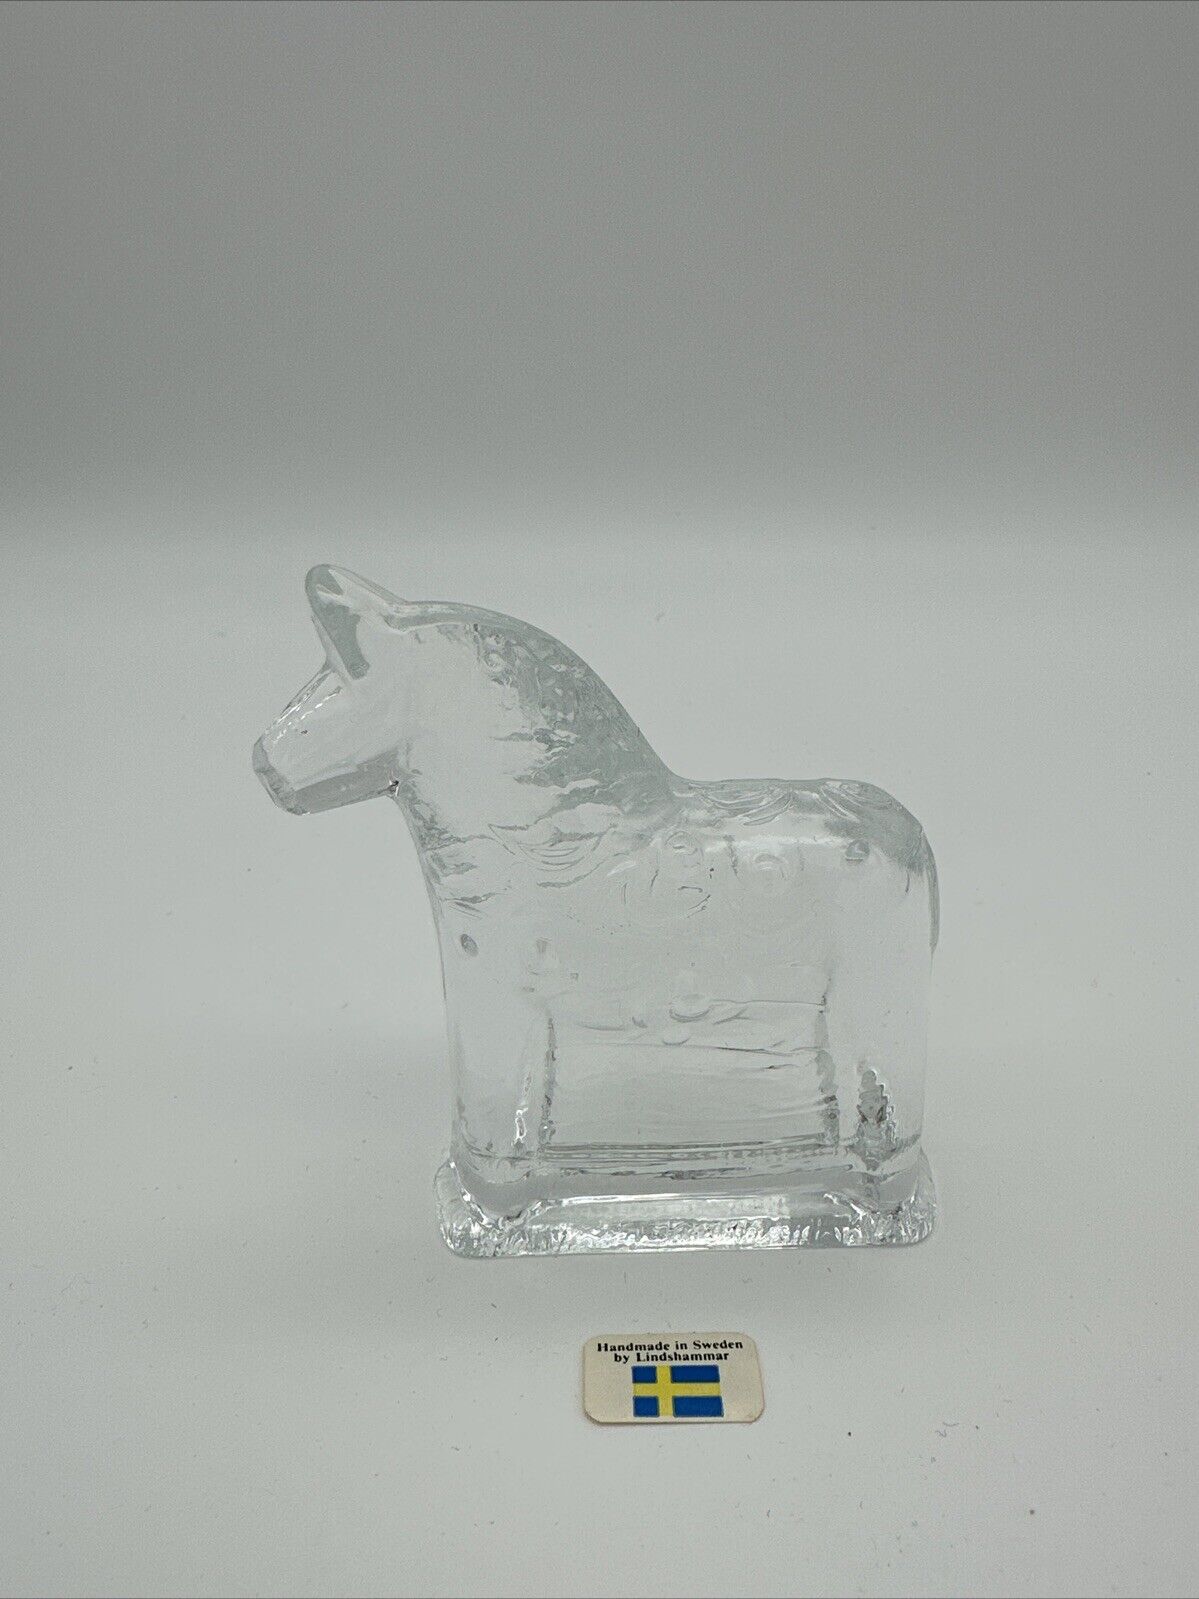 Lindshammar Glass Horse Figurine Handmade In Sweden